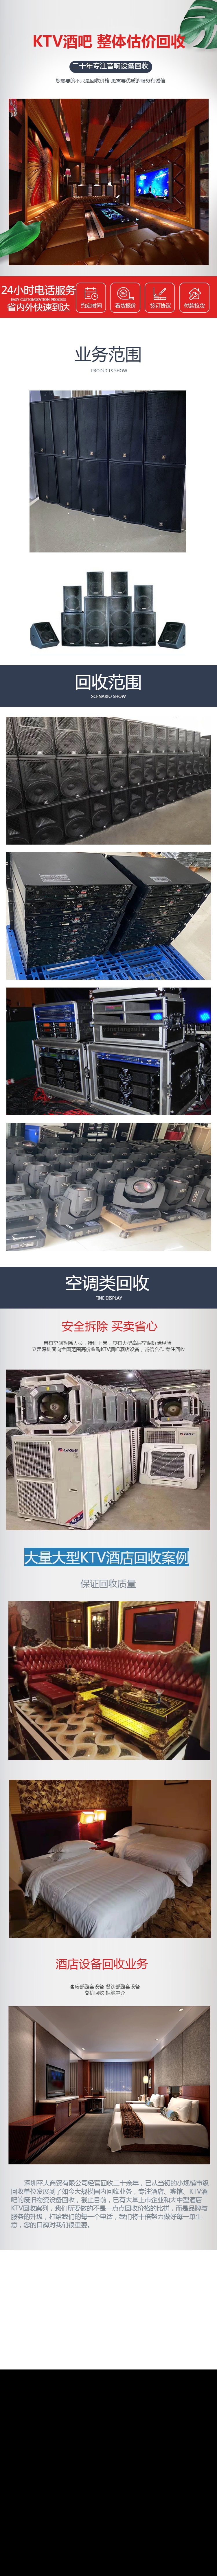 深圳回收酒吧ktv音响设备 深圳打碟机回收